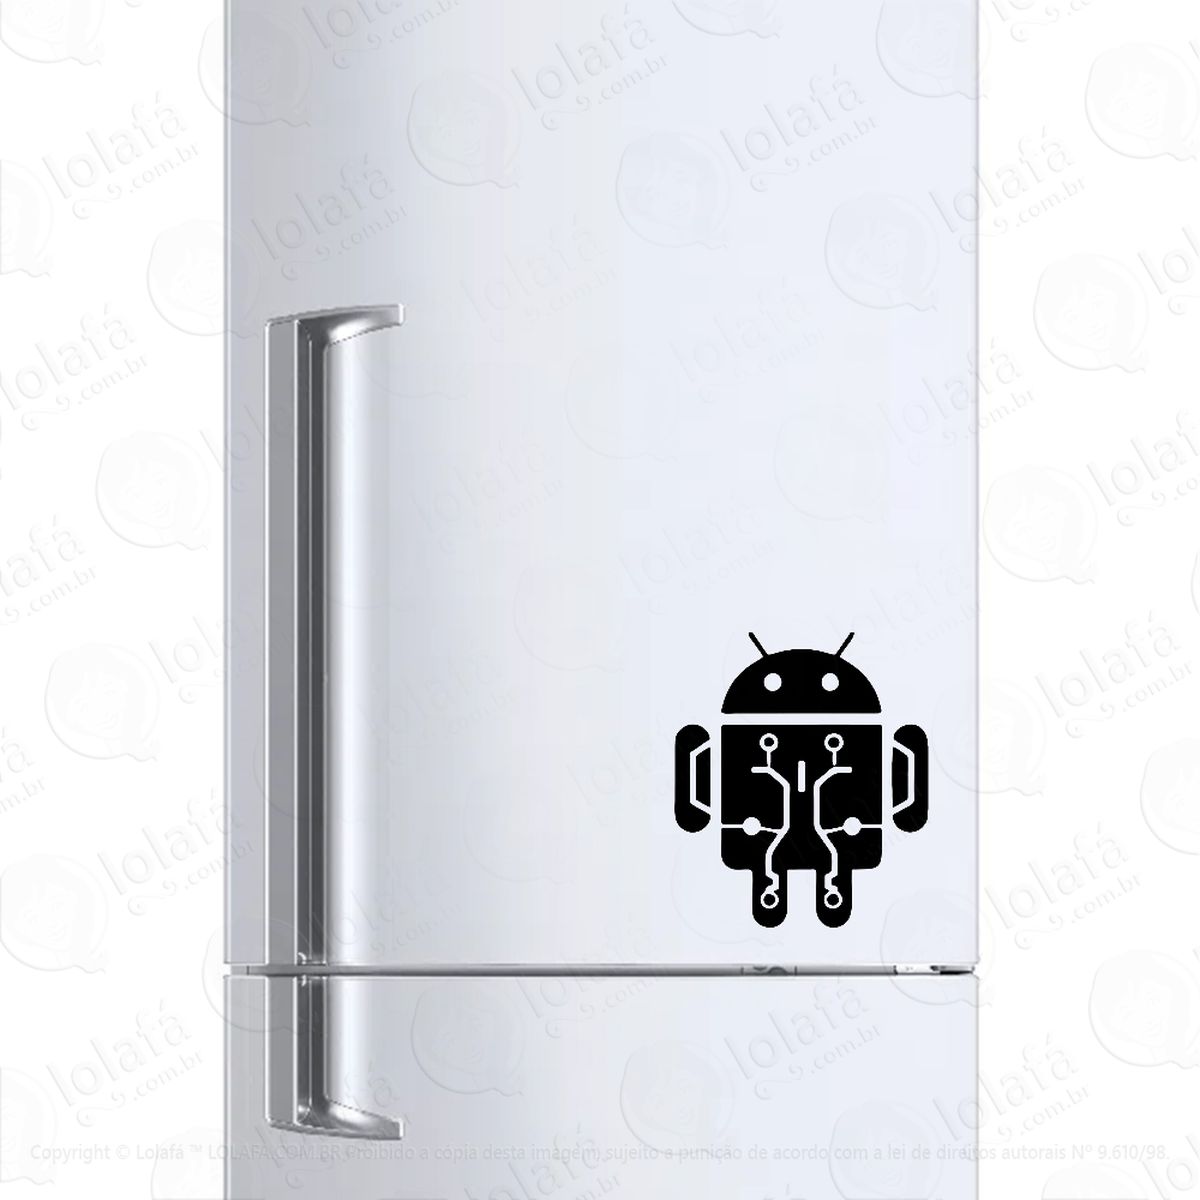 adesivo geladeira frigobar cervejeira programação android mod:212